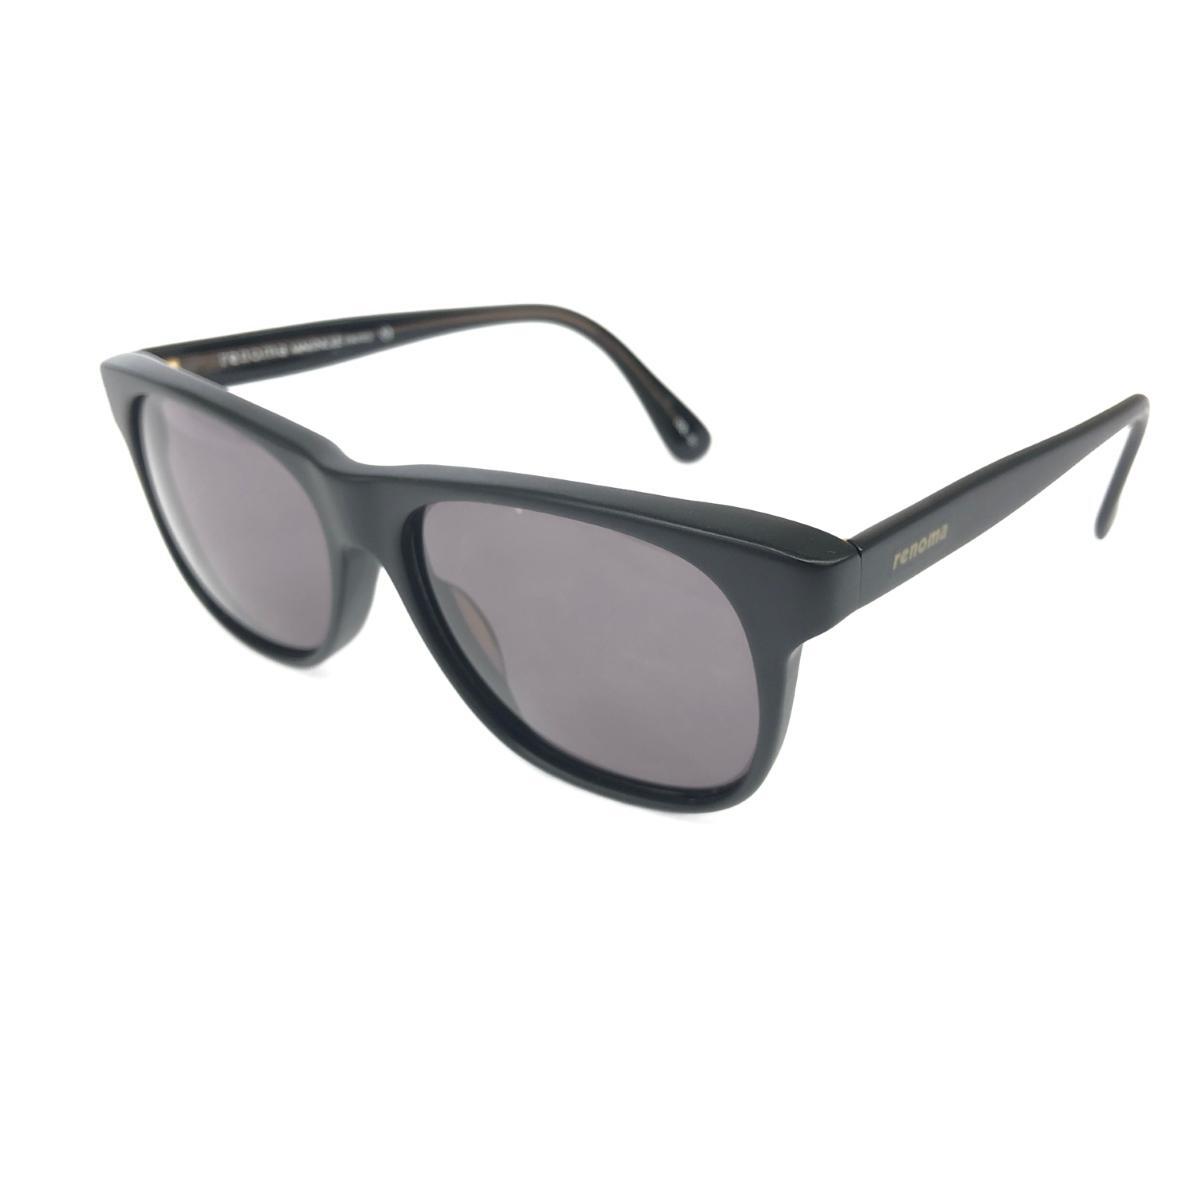 良好◆RENOMA レノマ ヴィンテージ サングラス◆20-531 ブラック ウェリントン型 ユニセックス サングラス sunglasses 服飾小物_画像1